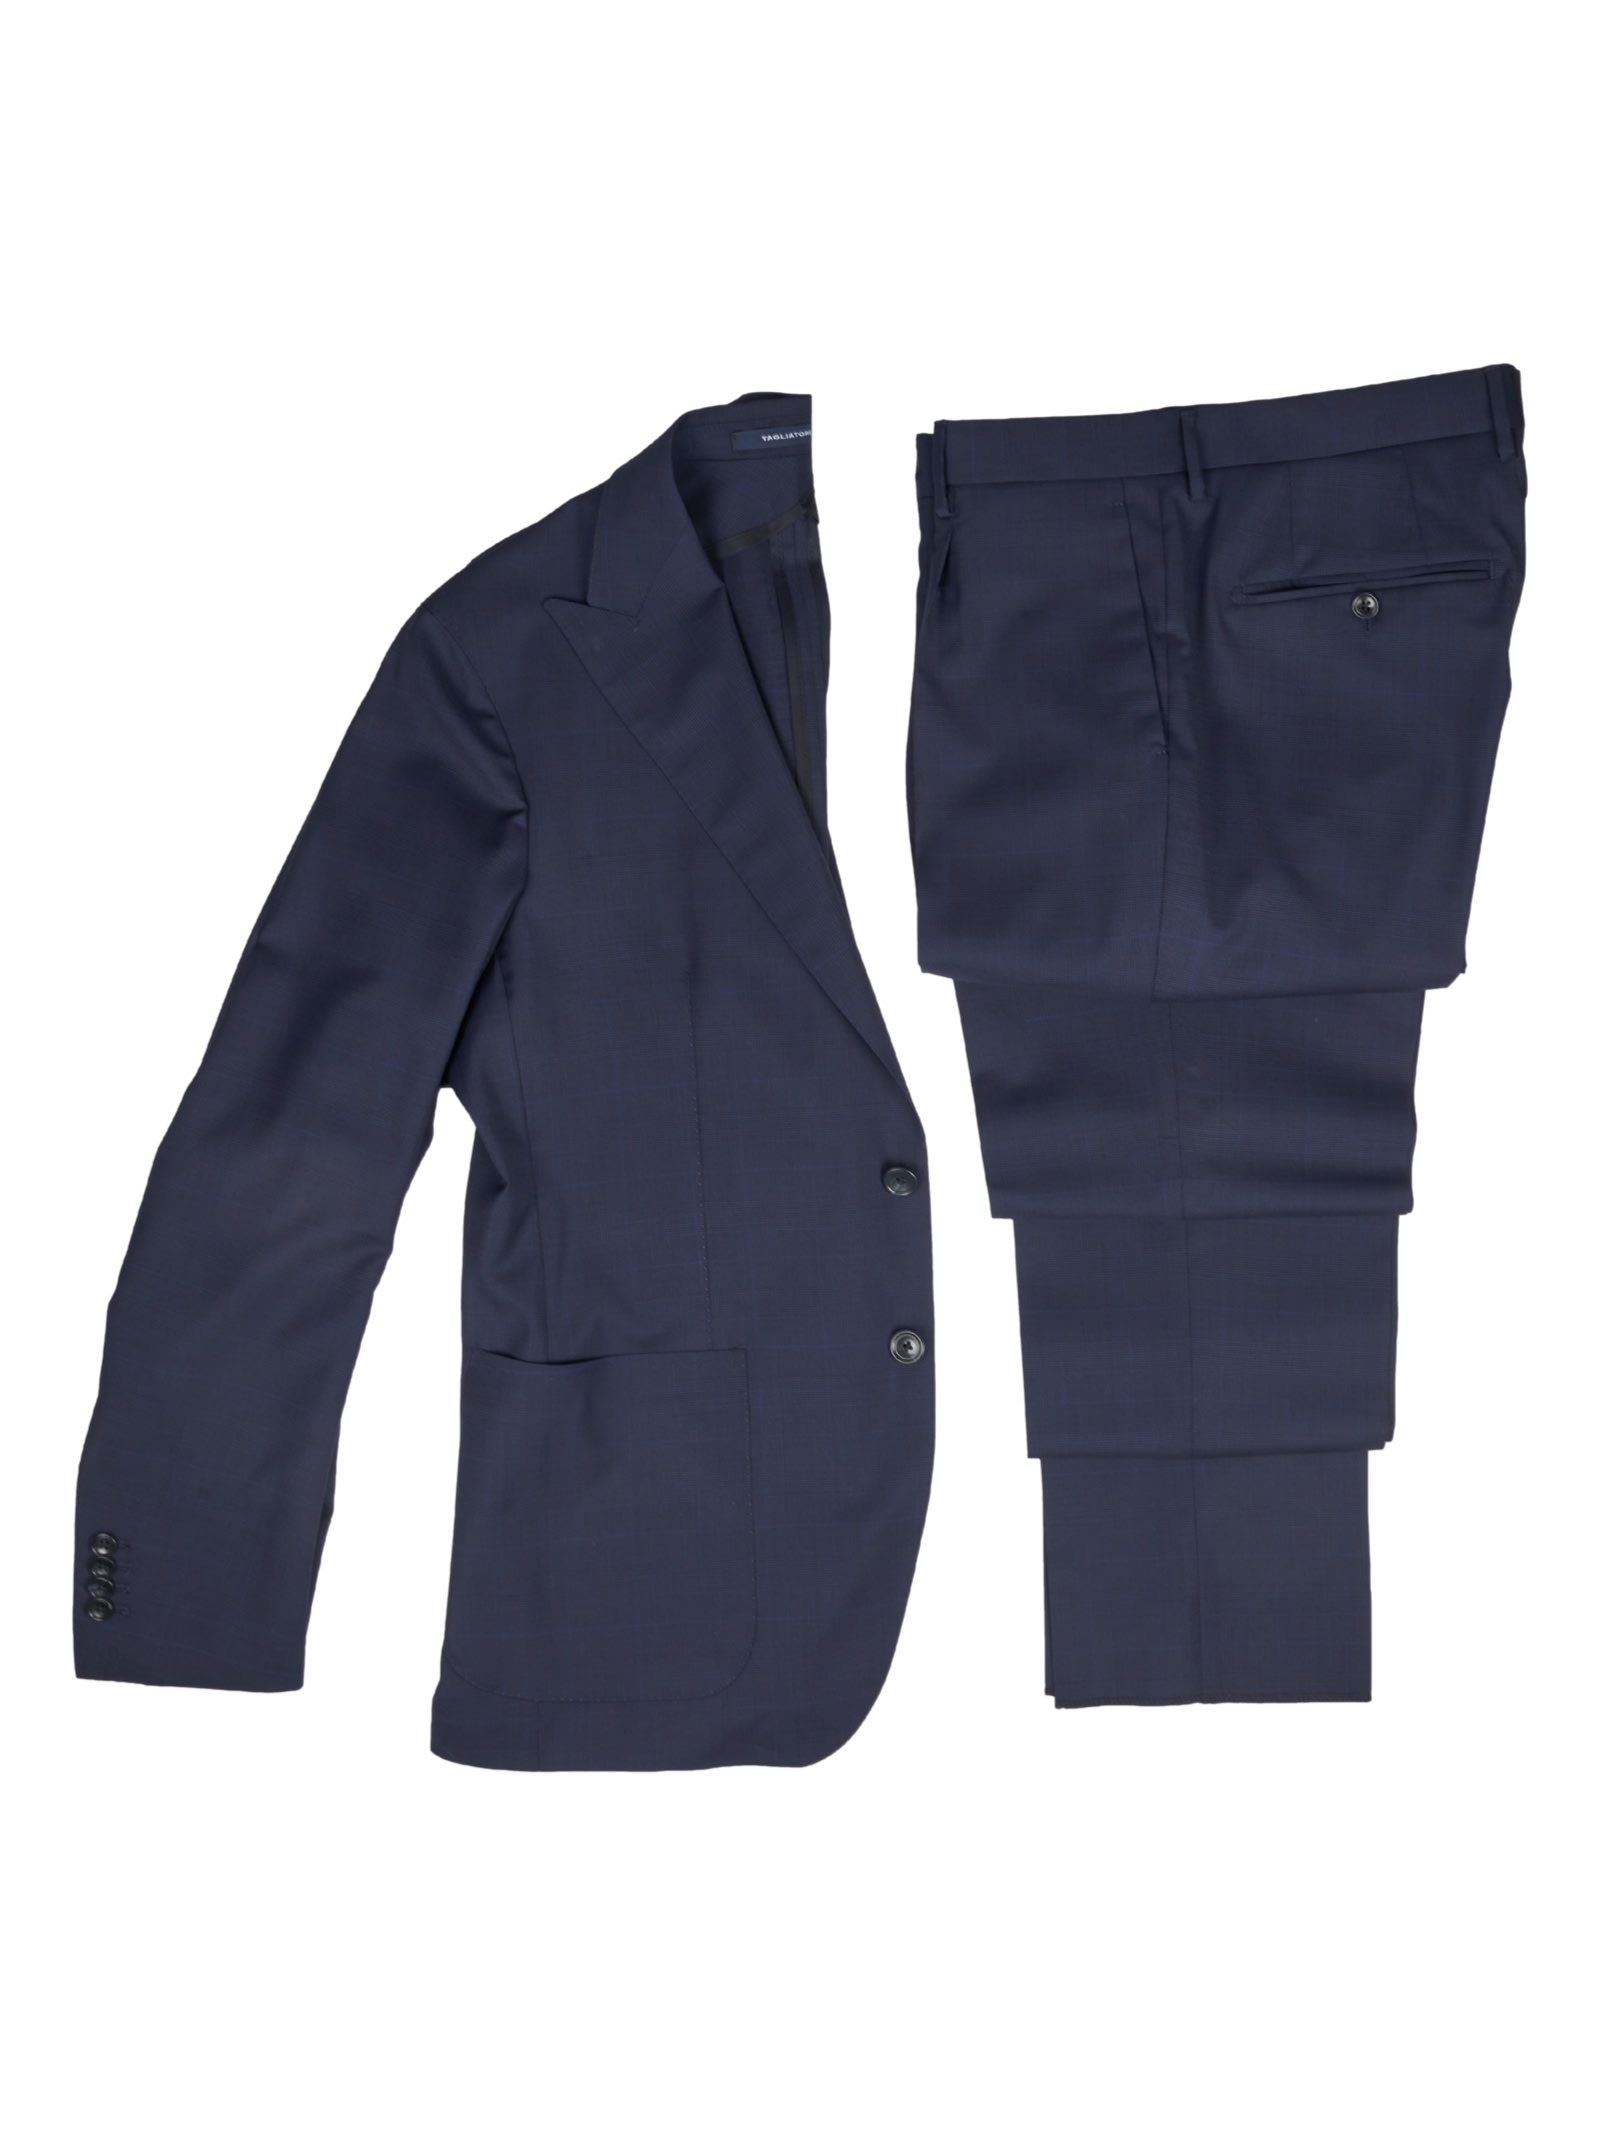 Shop Tagliatore Suit In Blue